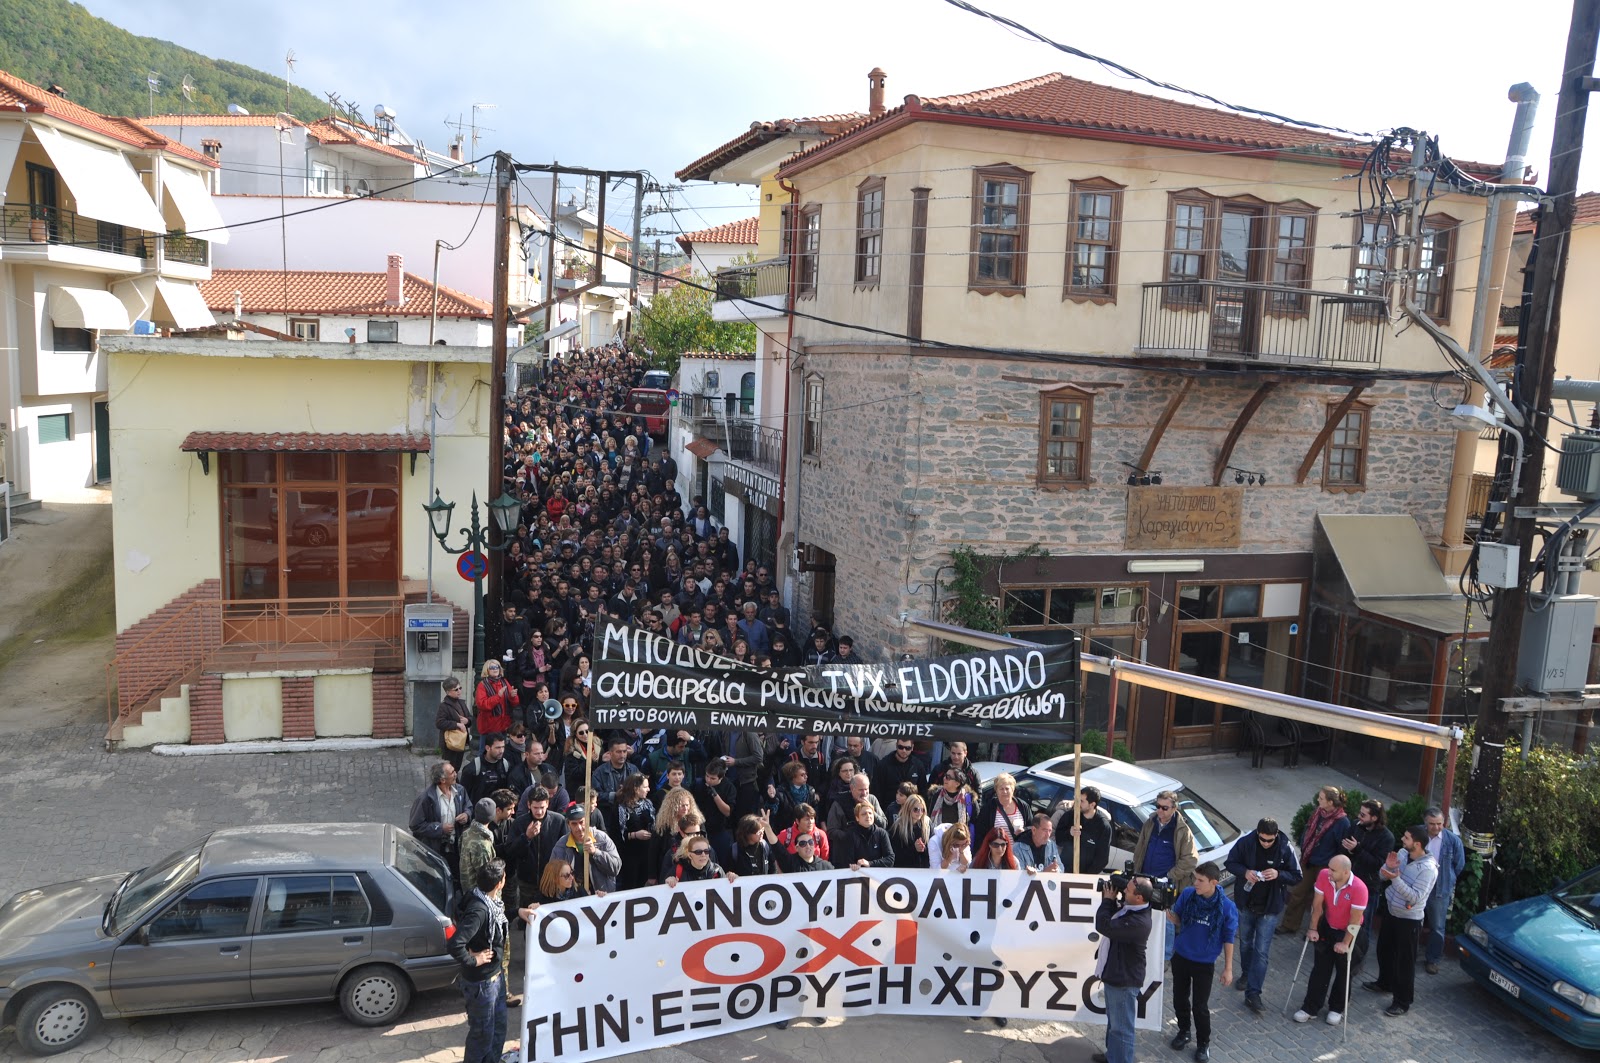 Μεγάλη διαδήλωση ενάντια στα μεταλλεία χρυσού στις Σκουριές Χαλκιδικής (video και φωτογραφίες)